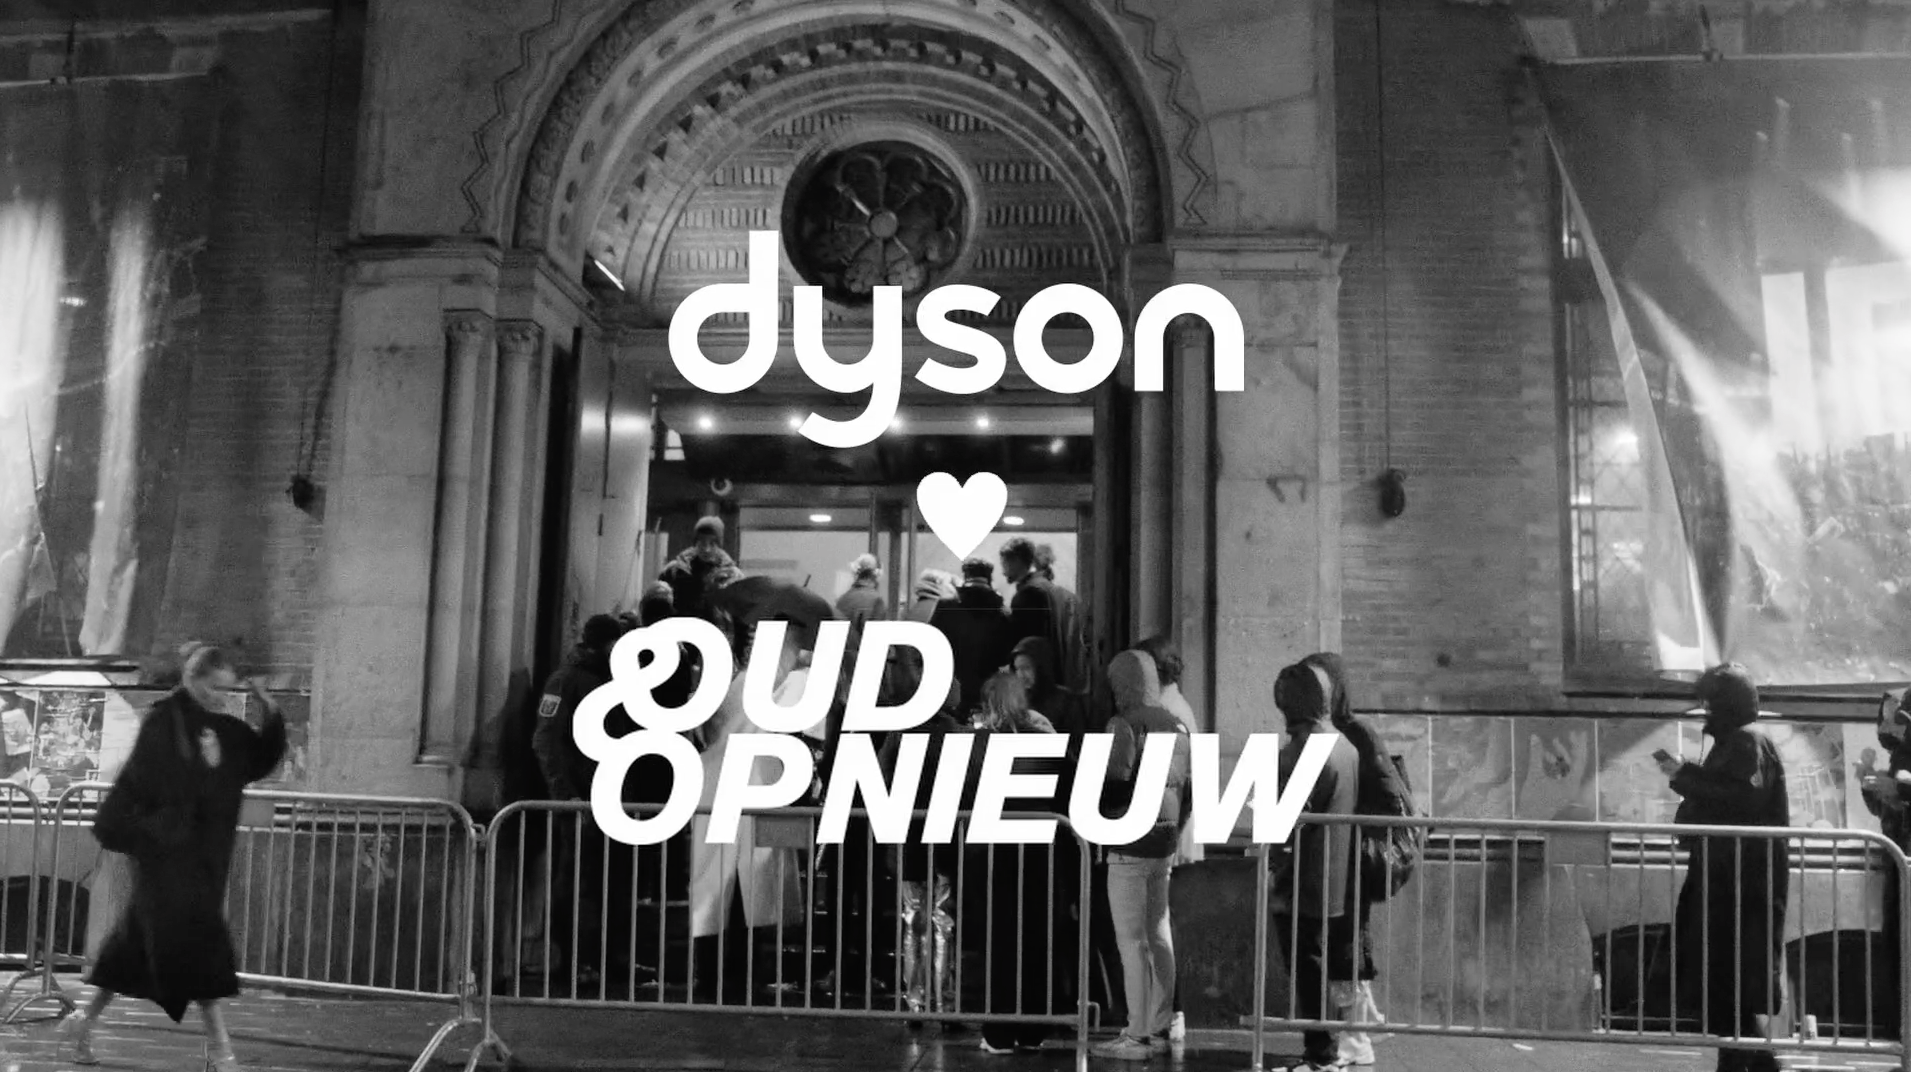 Dyson <3 Oud & Opnieuw